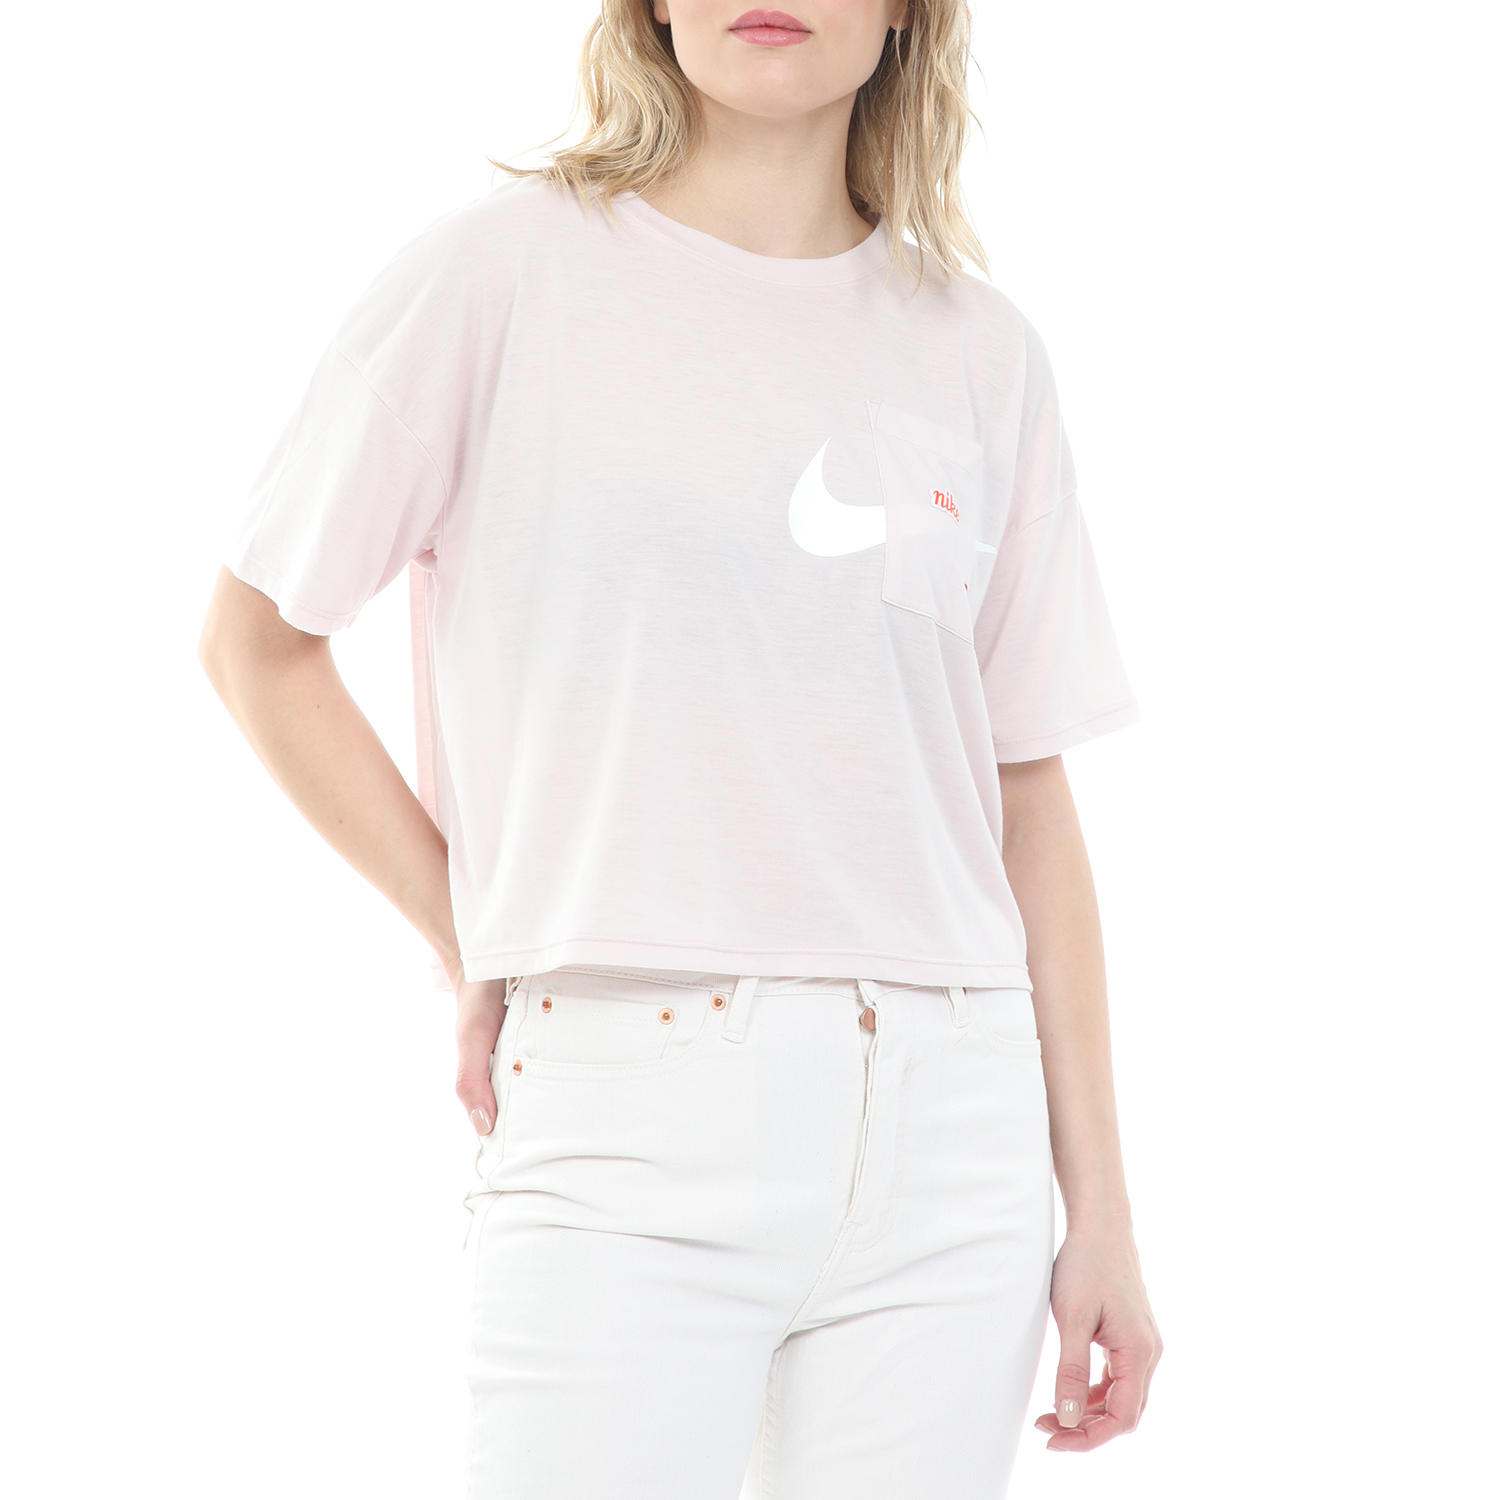 Γυναικεία/Ρούχα/Αθλητικά/T-shirt-Τοπ NIKE - Γυναικείο cropped top NIKE S/S TOP GX ICNCLSH WOW ροζ